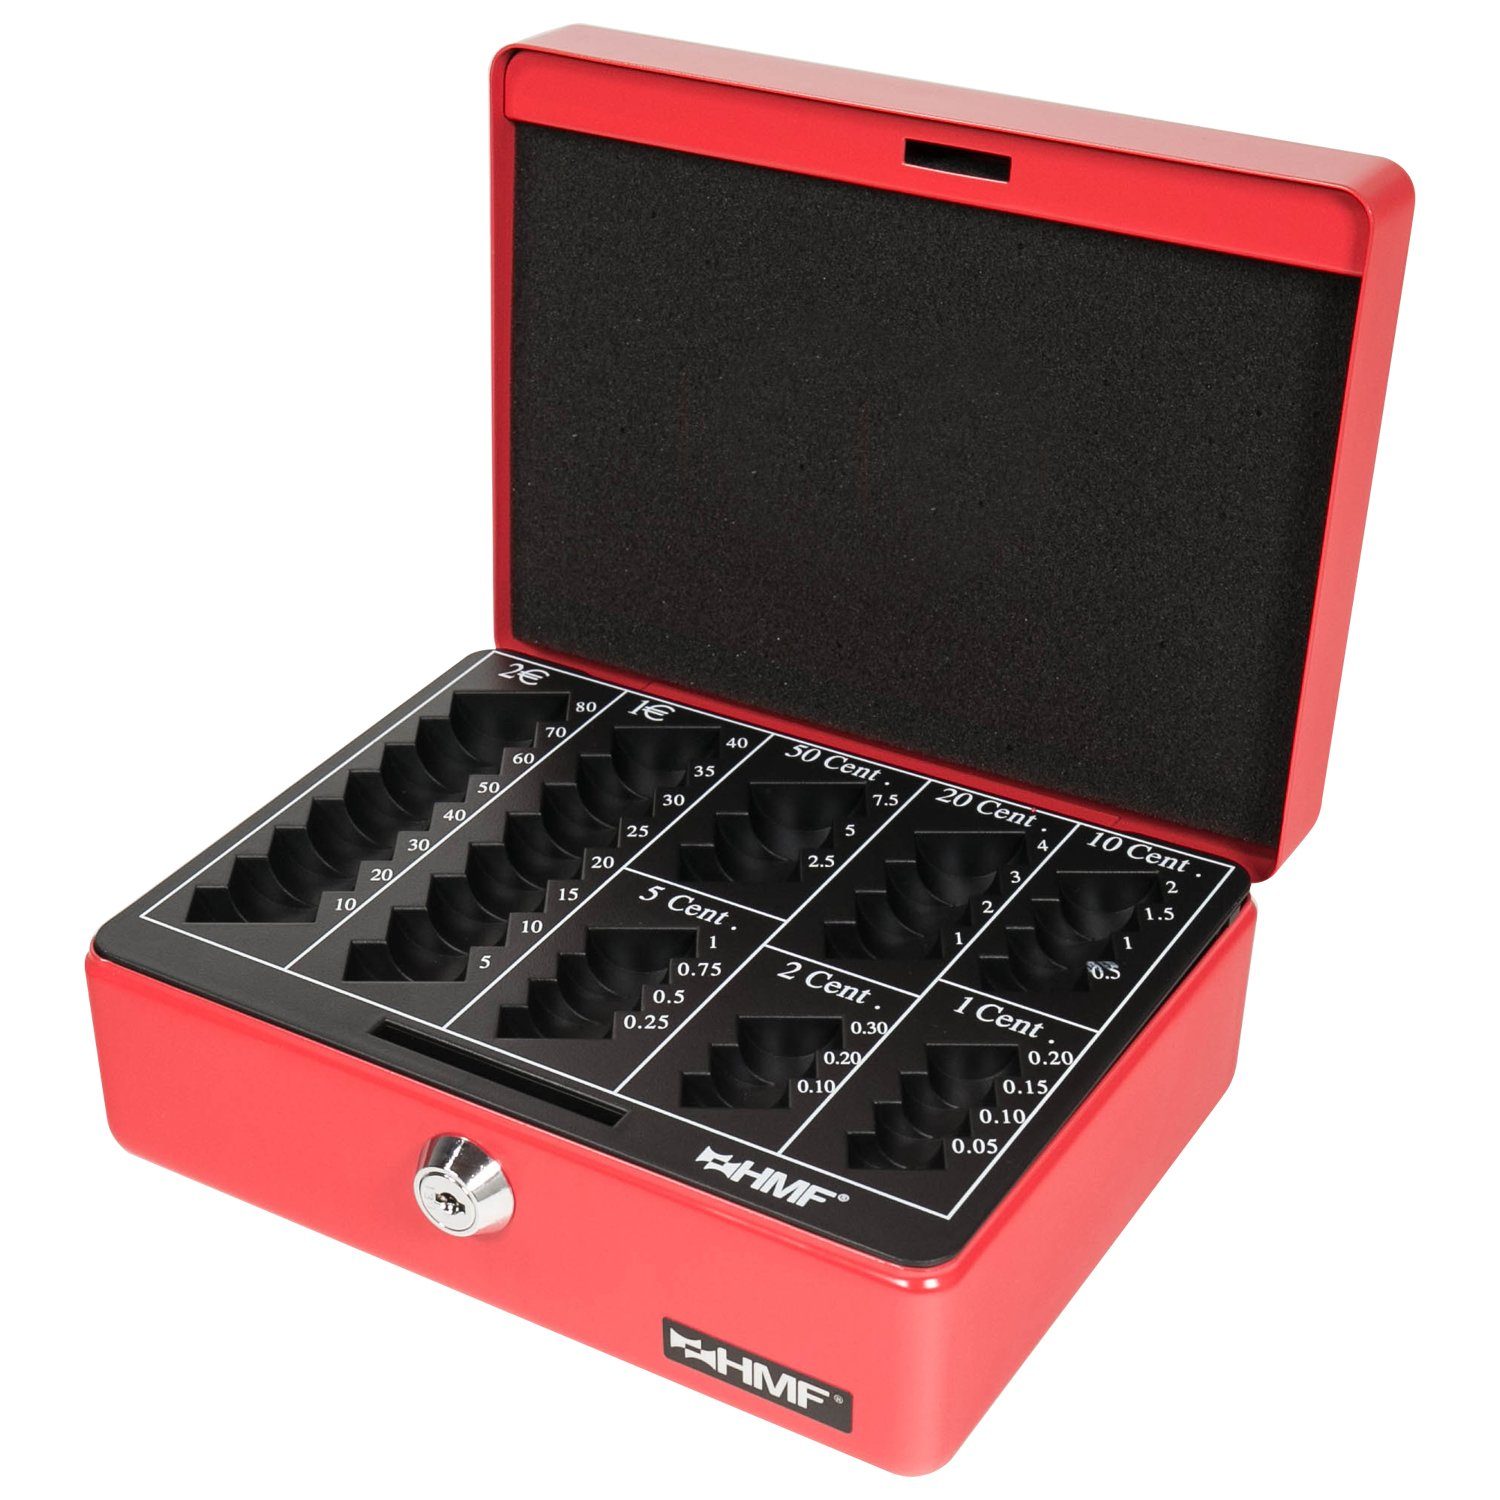 HMF Geldkassette Abschließbare Bargeldkasse mit Schlüssel, rot 20x16x9 Geldbox mit Münzzählbrett, cm robuste